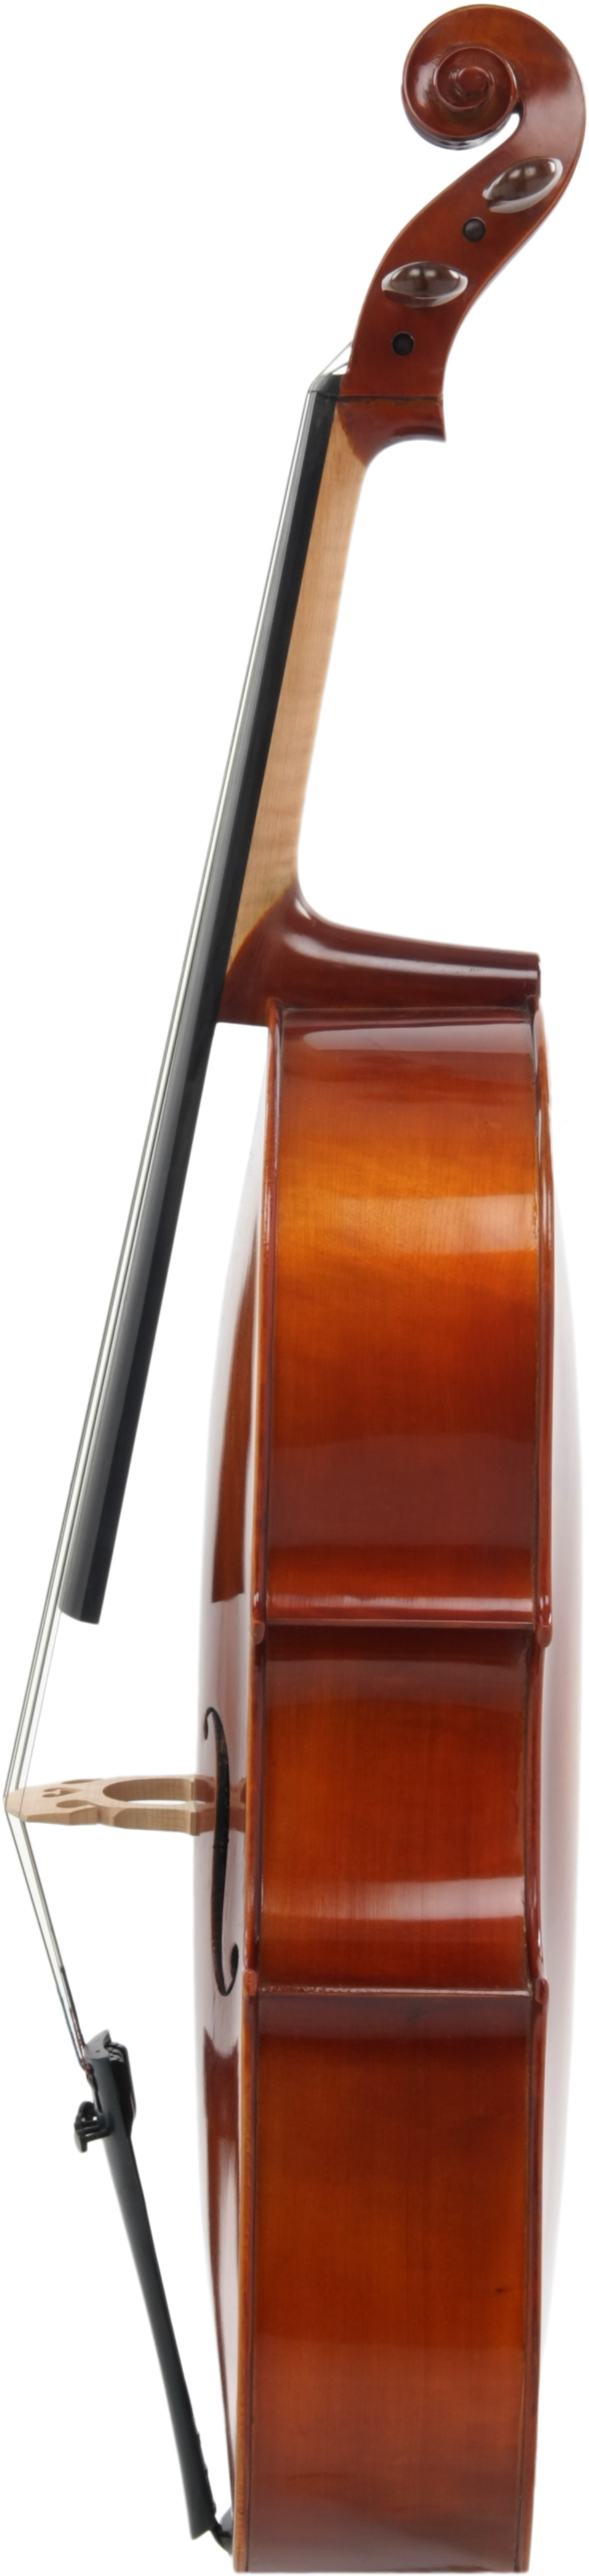 AS-190 Cellogarnitur 3/4 mit Bogen und Tasche